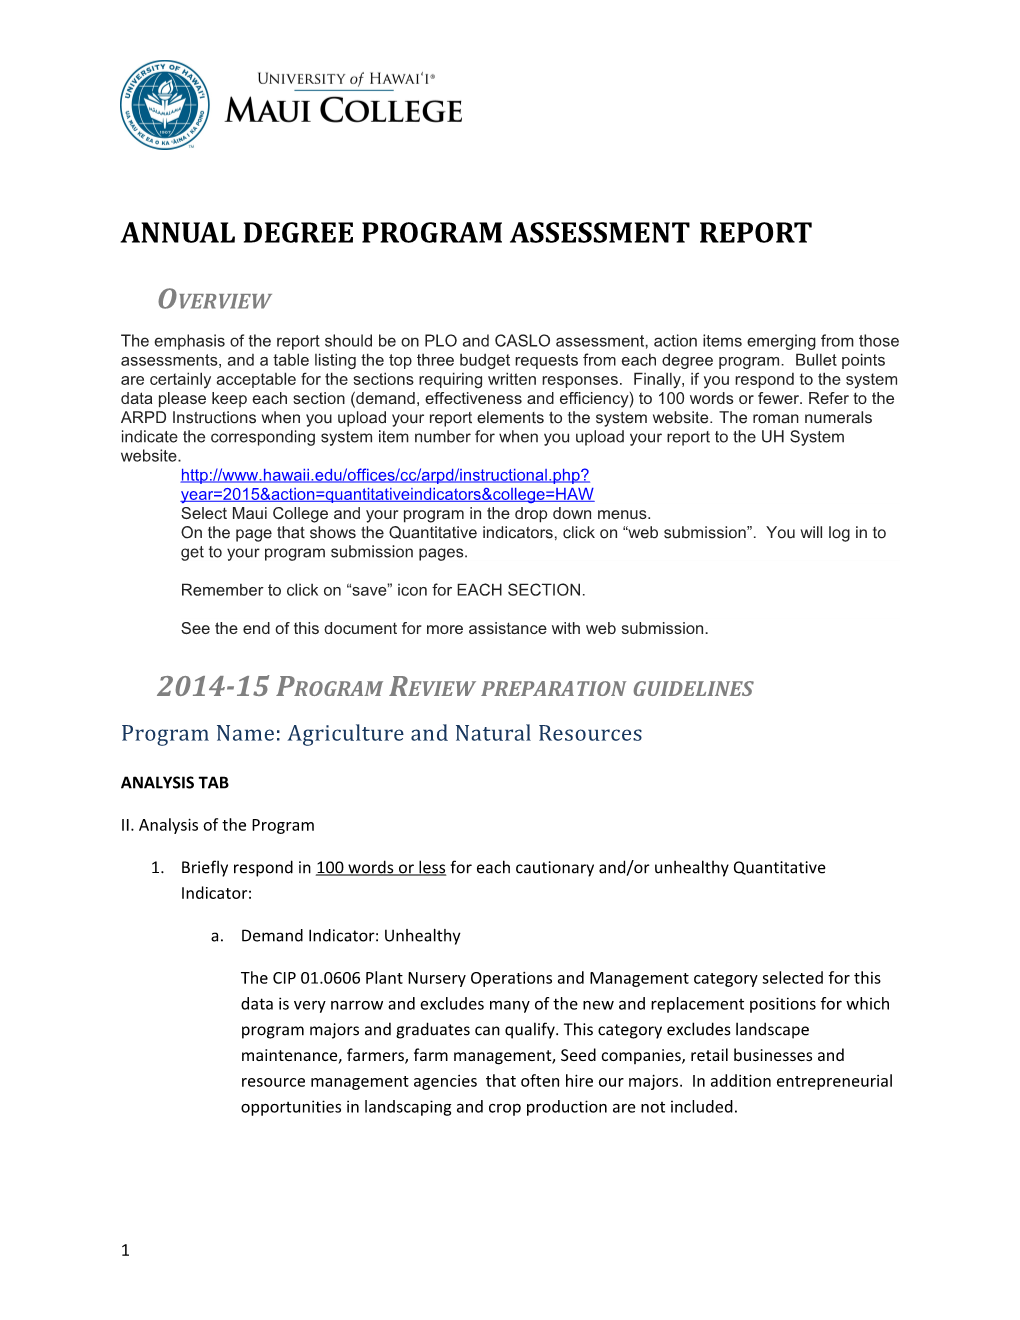 Annual Degree Program Assessment Report